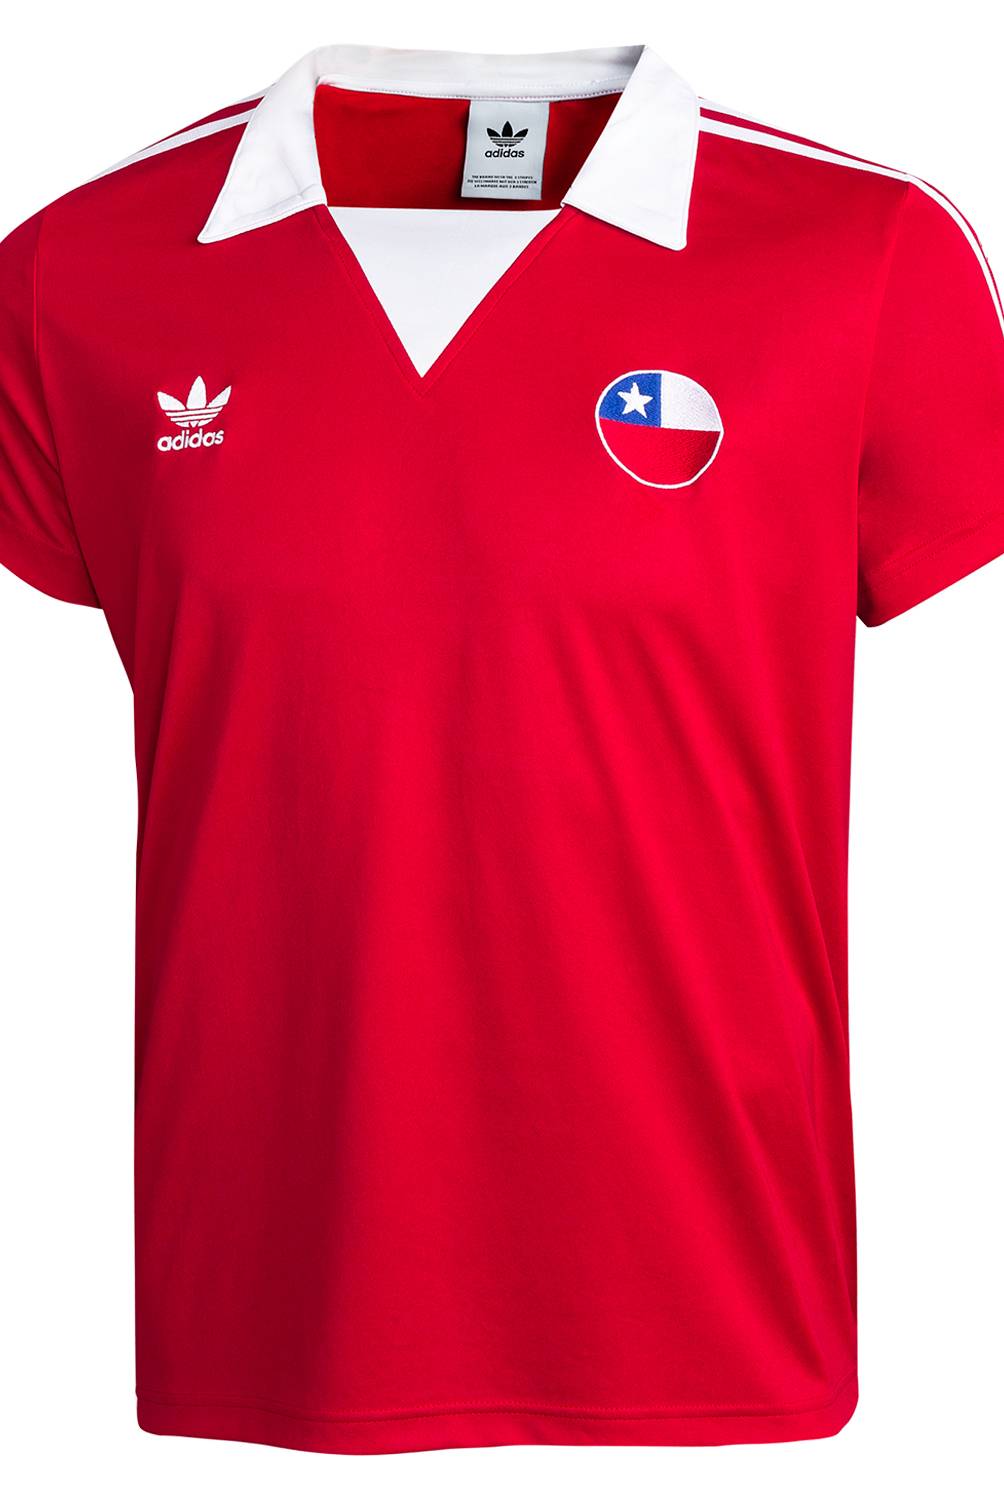 adidas originals - Camiseta Chile Fan